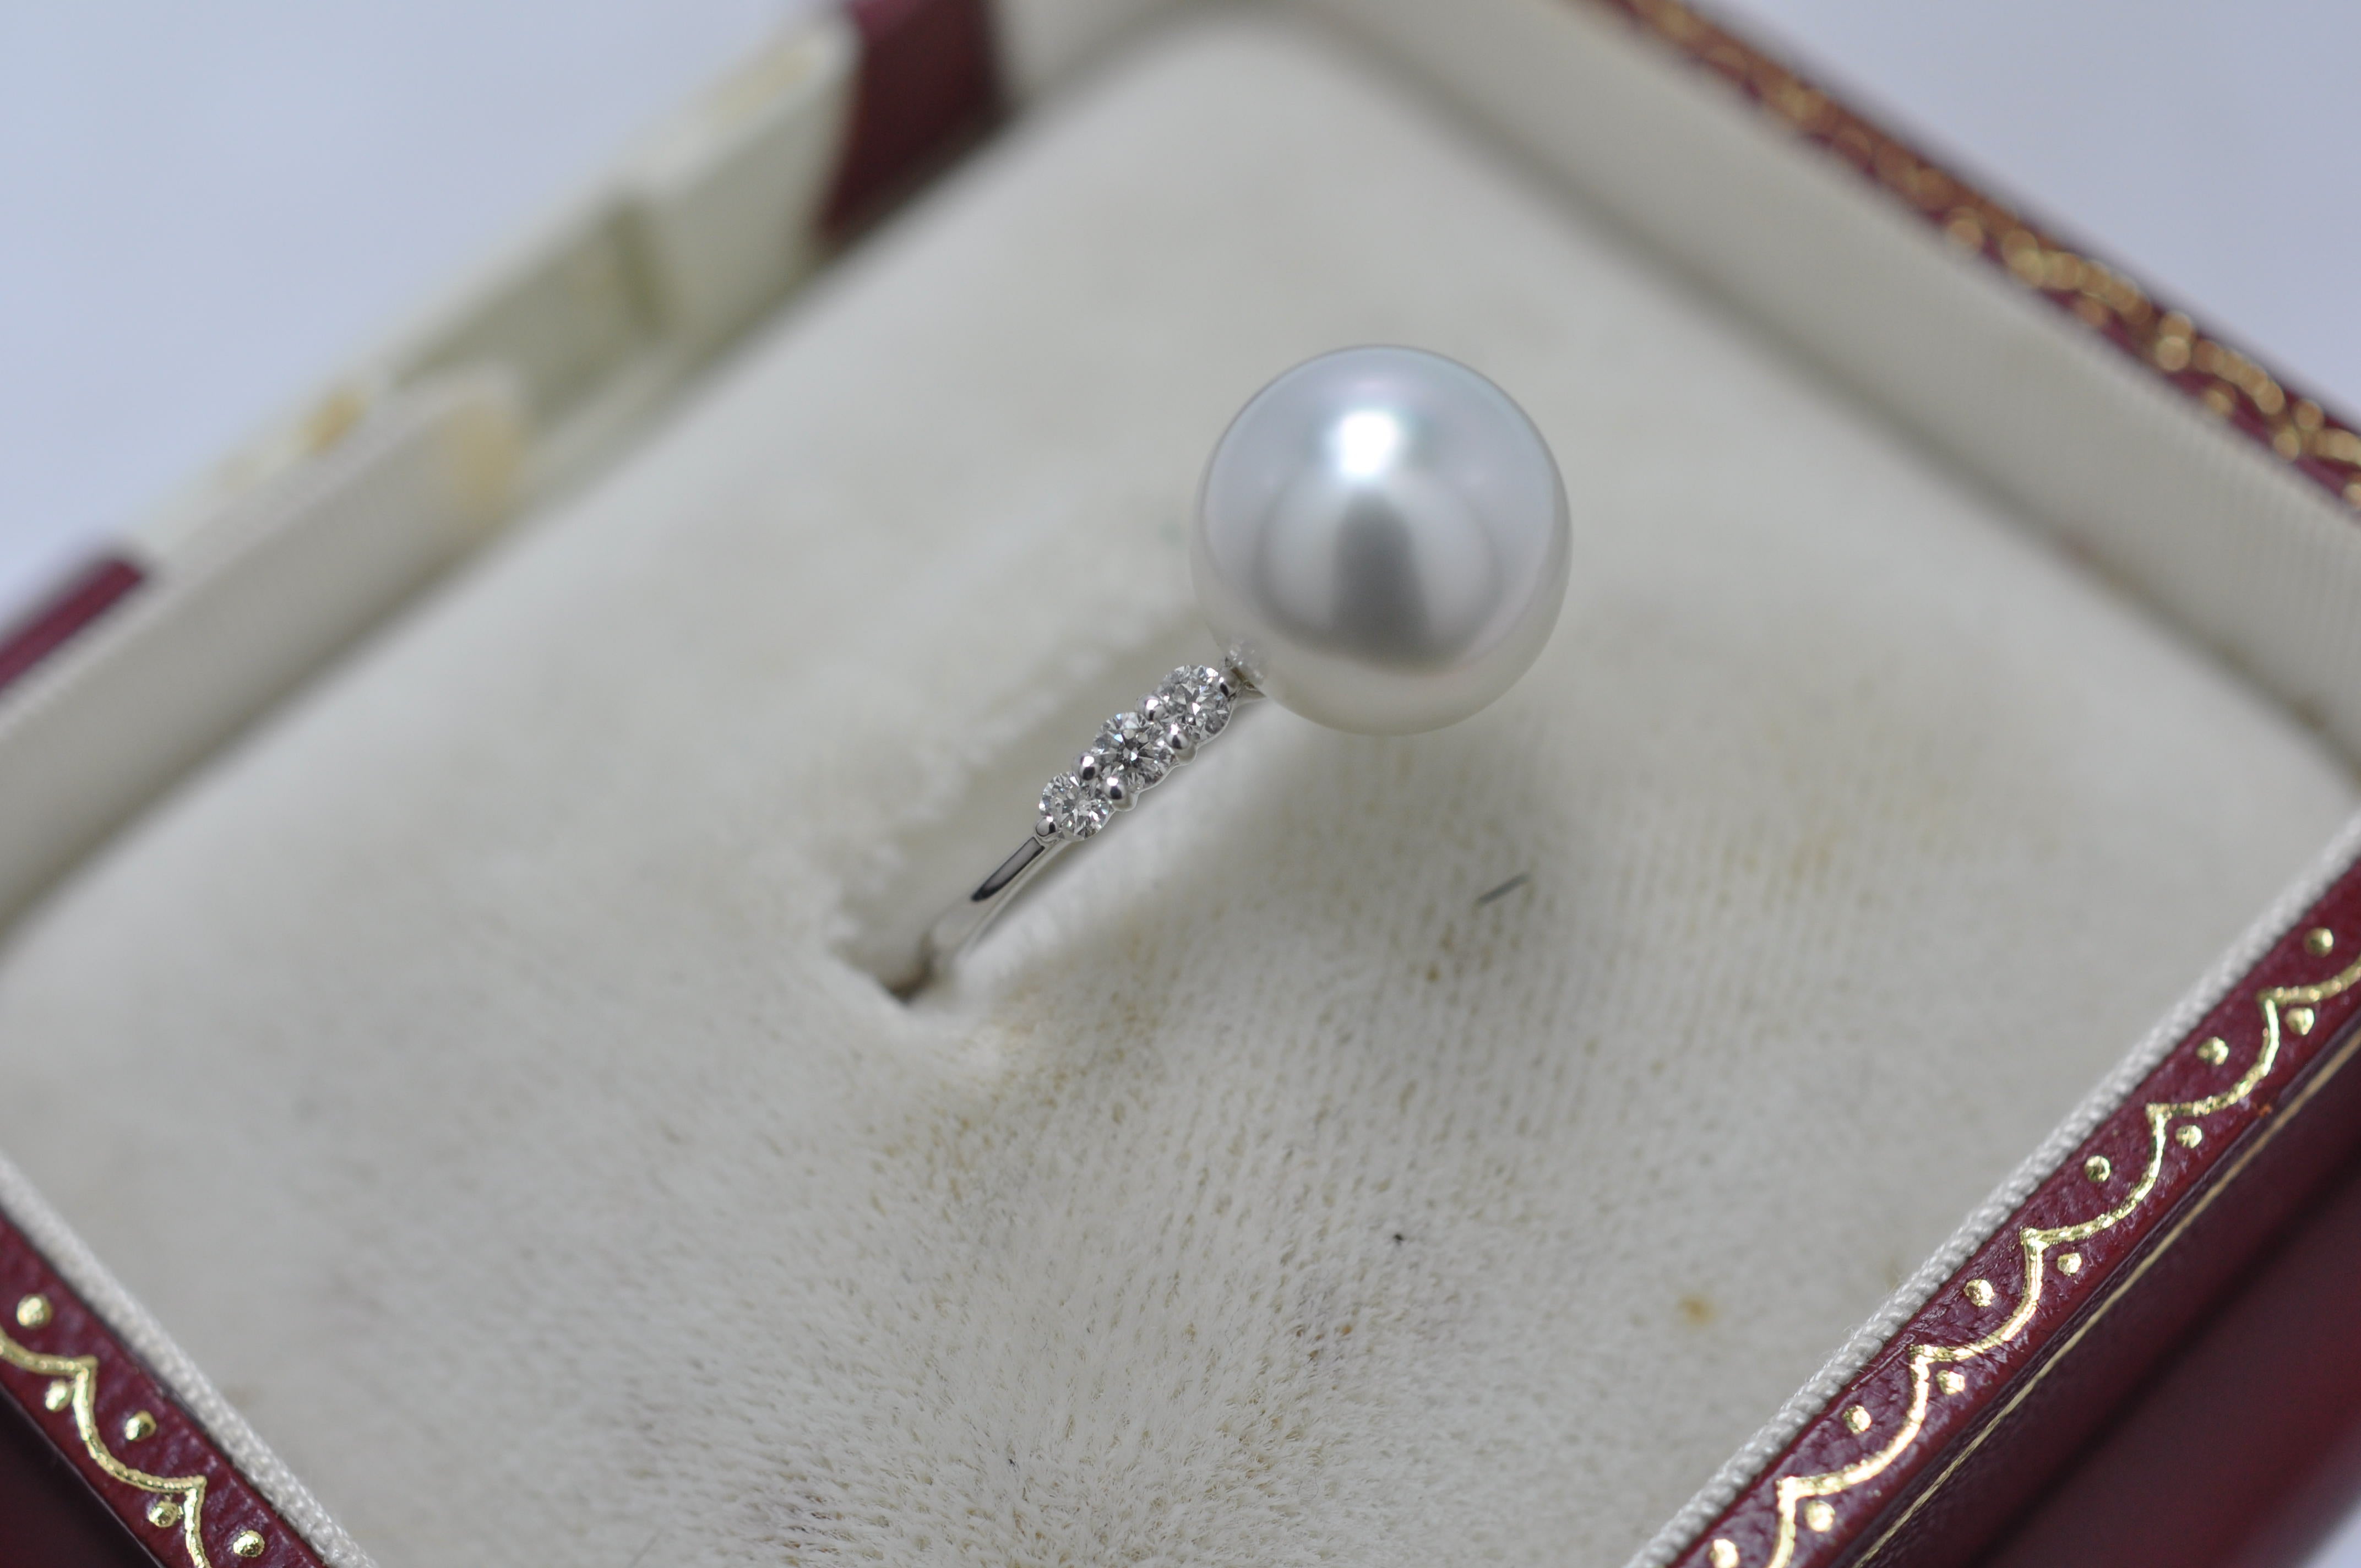 真珠(パール) ダイヤ リング買取ました～【京都市 質屋 買取】 | 京都の質屋店主ブログ